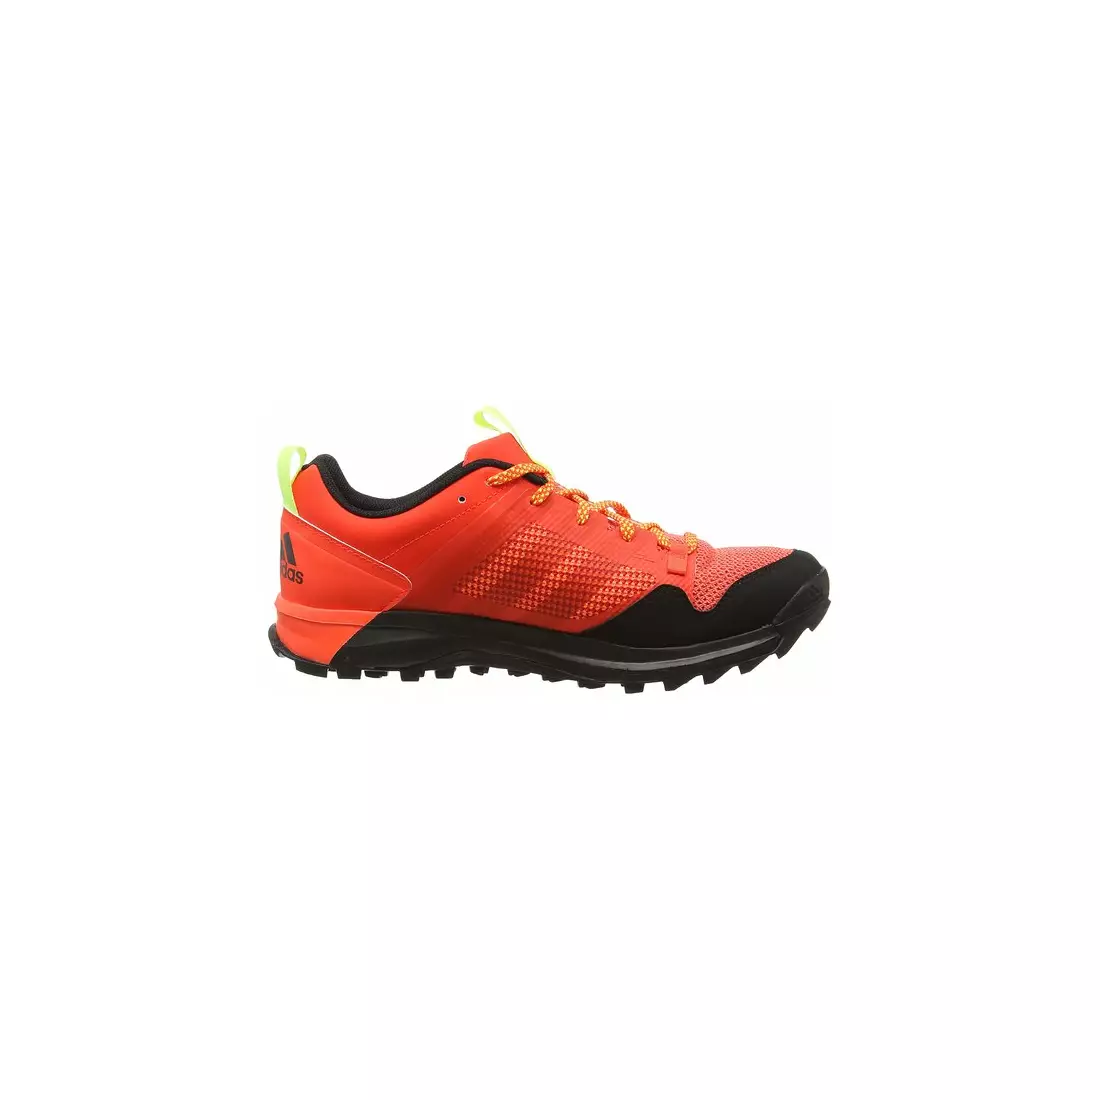 ADIDAS Kanadia 7 tr m B33625 men's running shoes